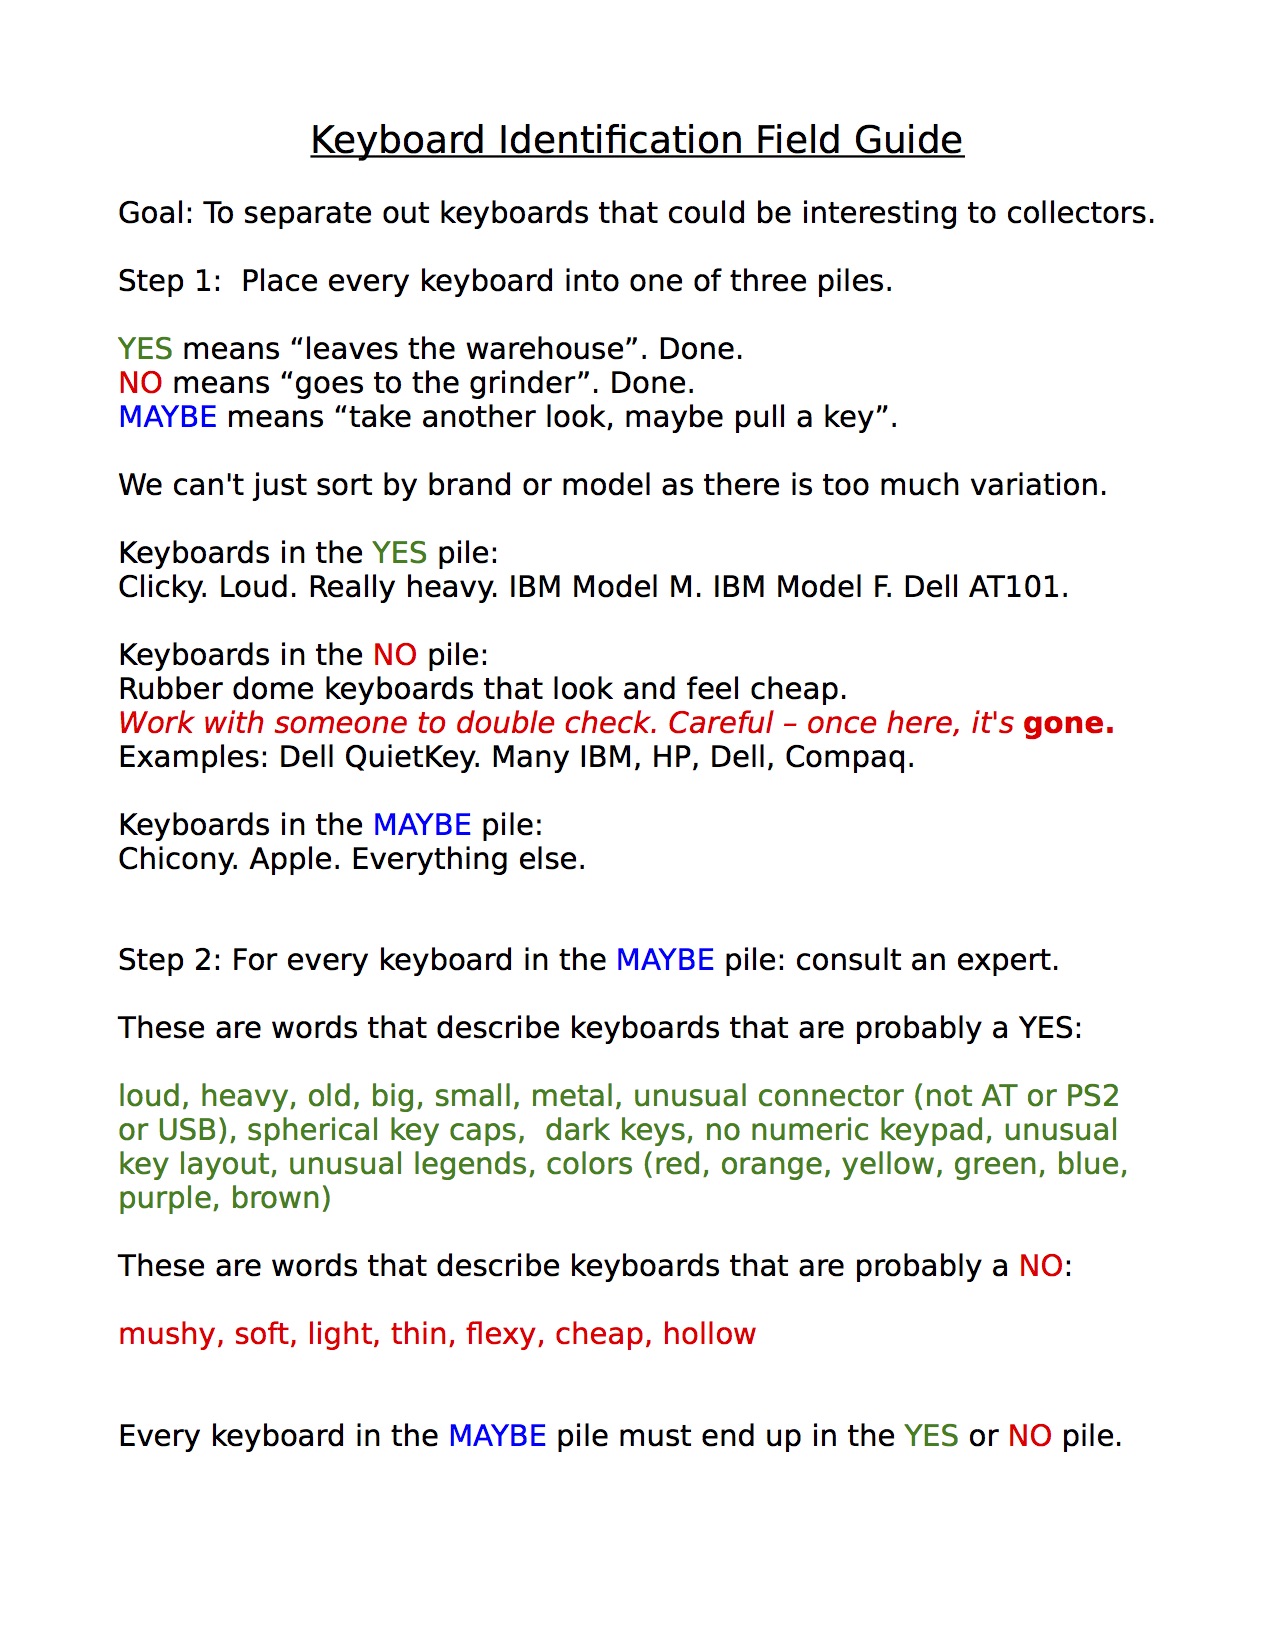 20150417 Keyboard Field Identification Guide.jpg